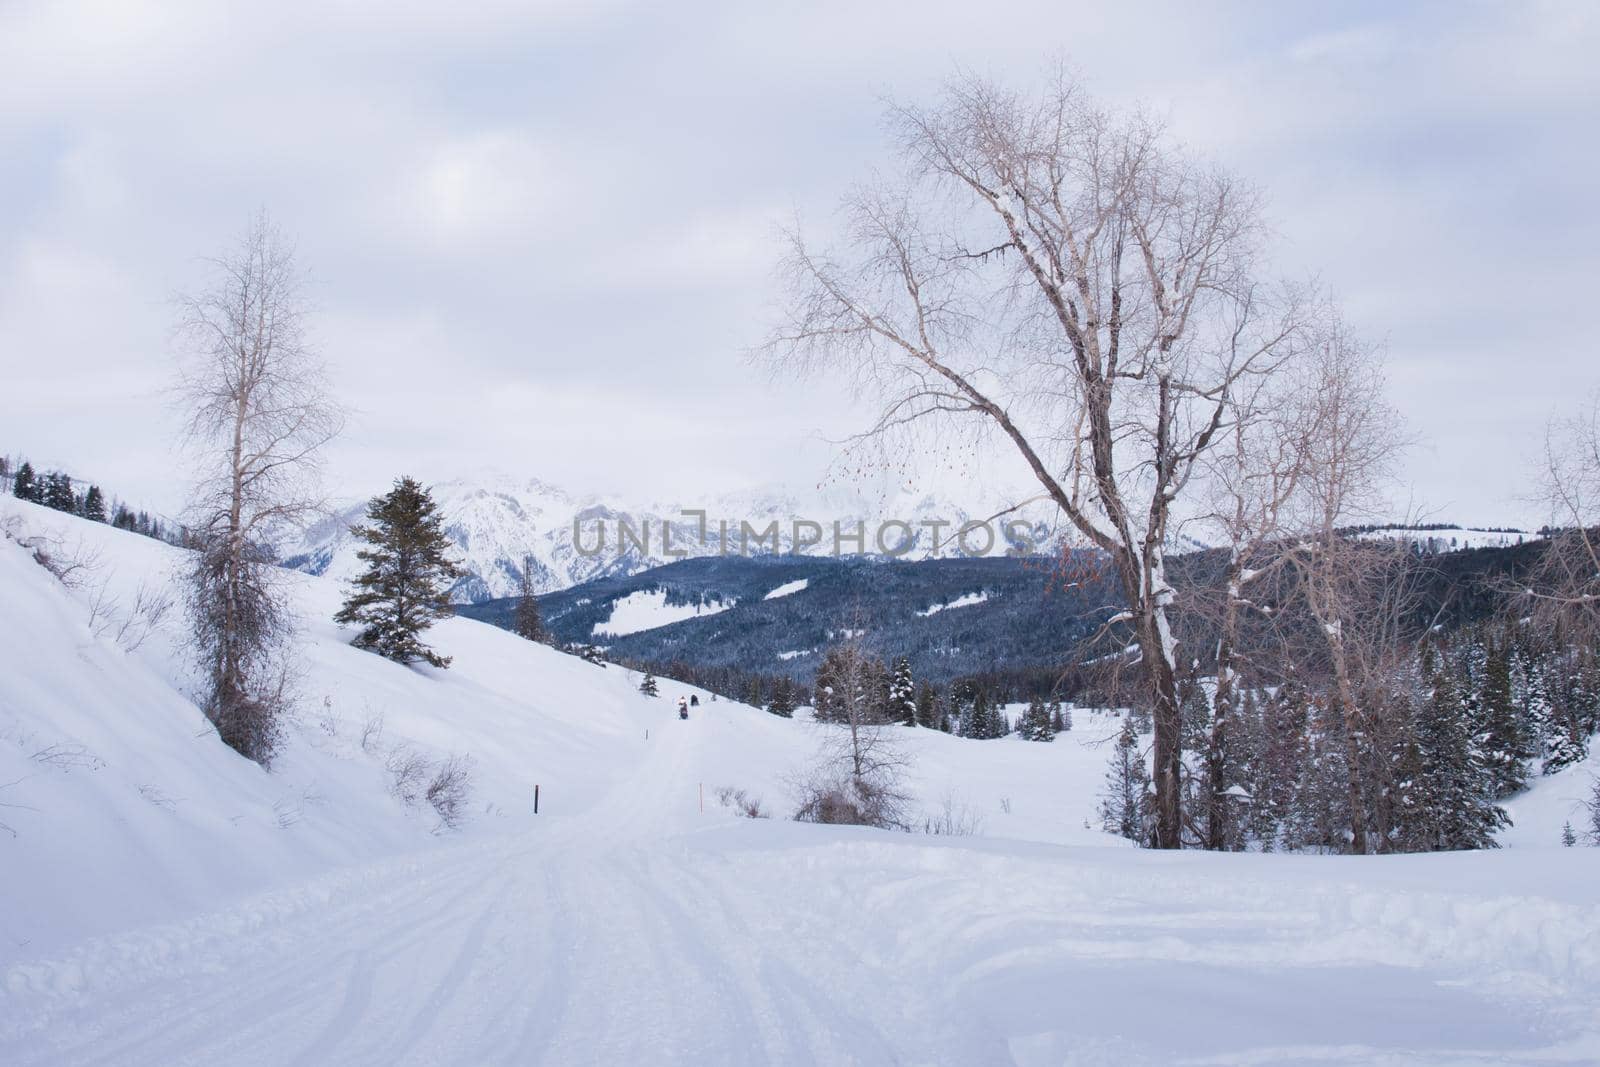 Winter wonderland by arinahabich